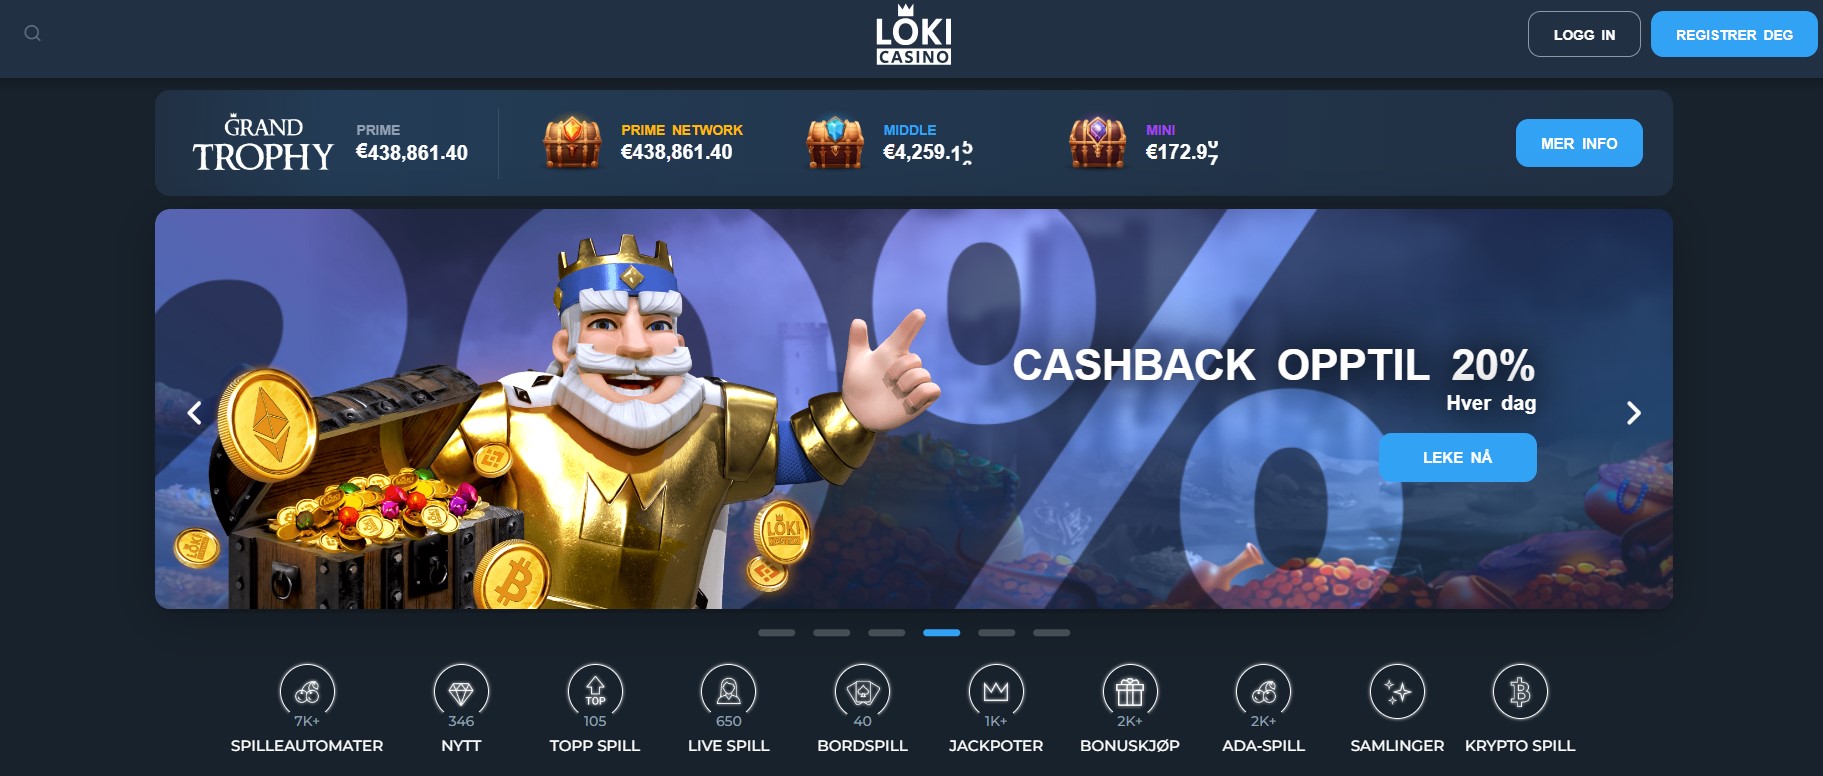 loki casino main page